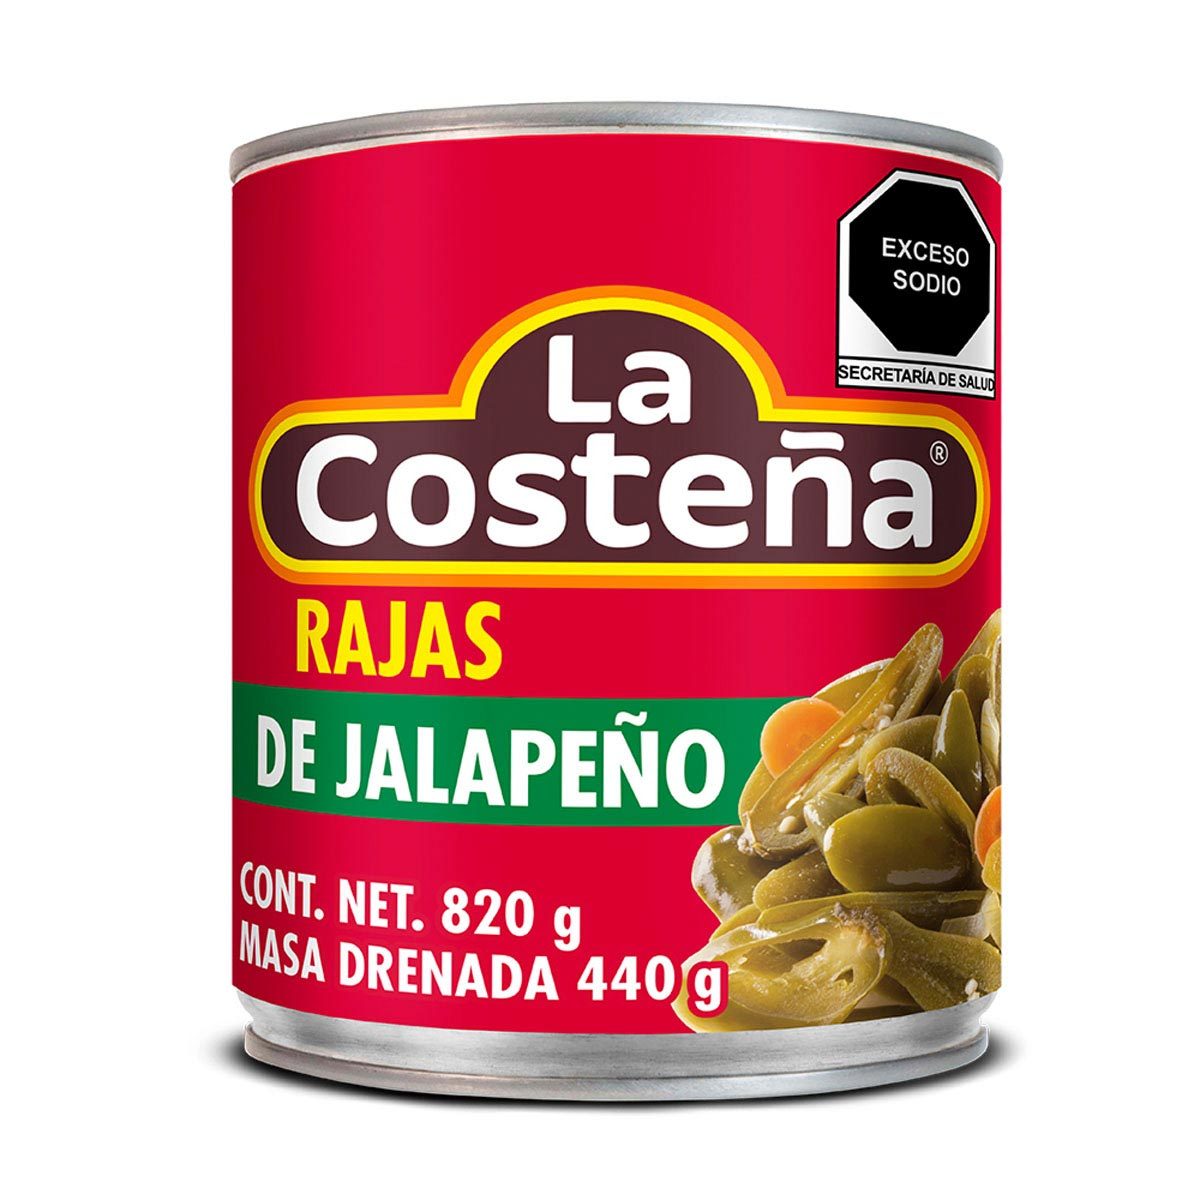 CHILES JALAPEÑOS EN RAJAS LA COSTEÑA 820g